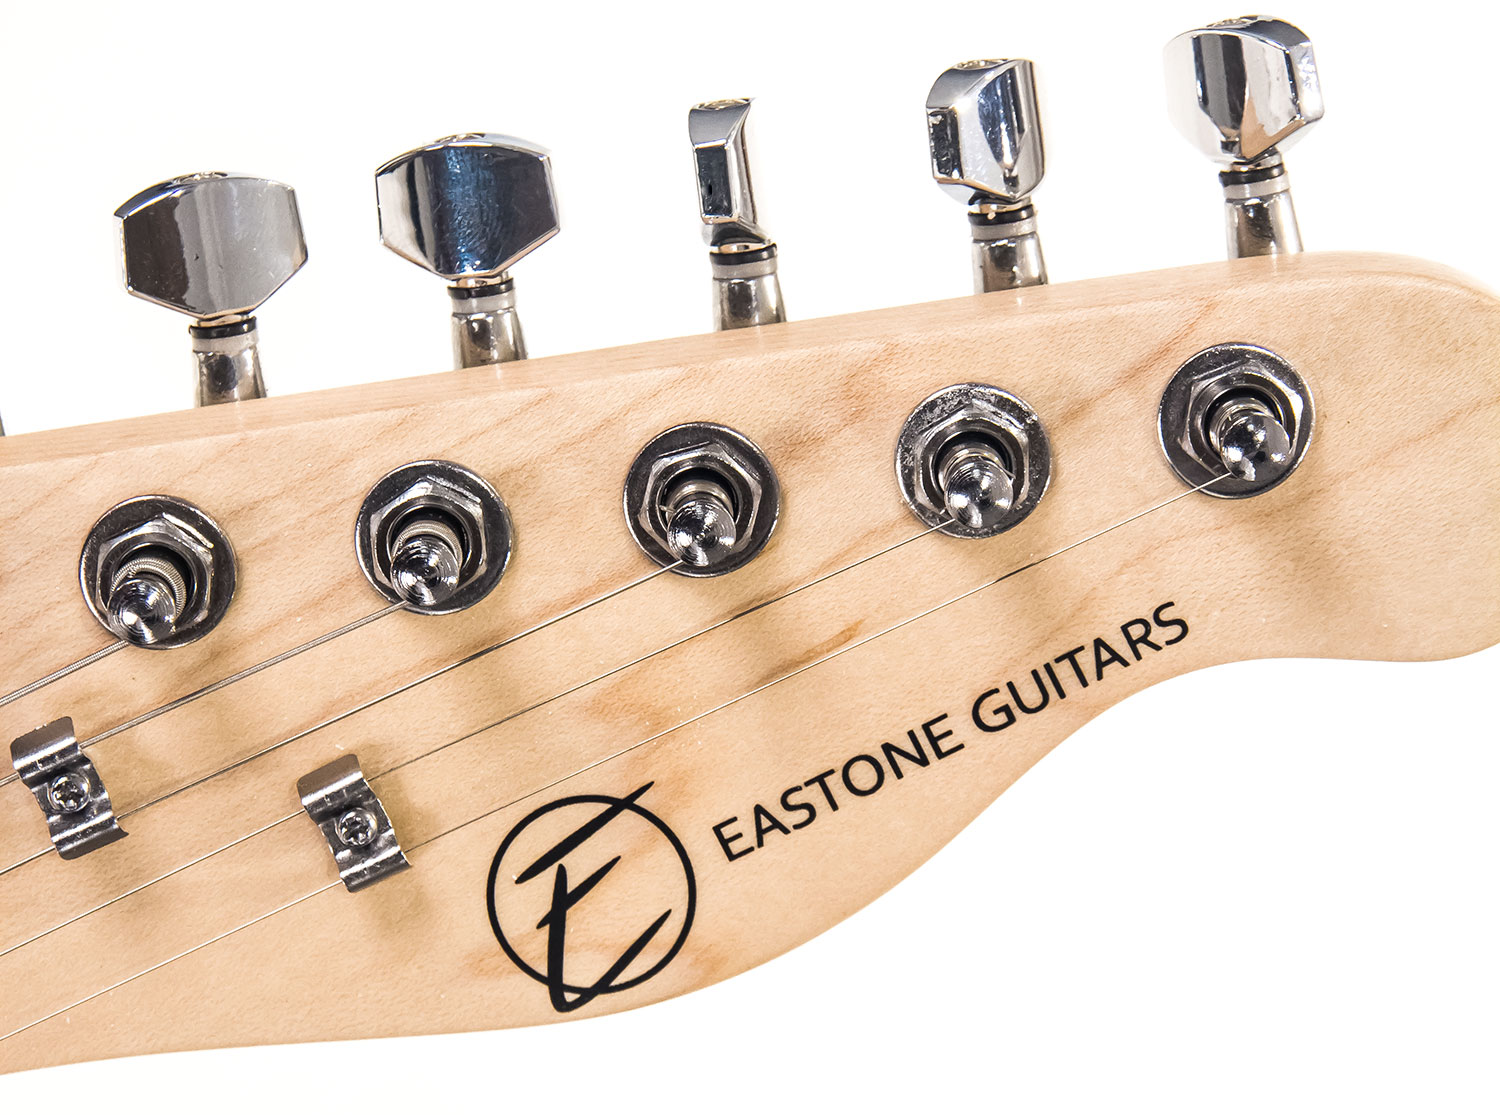 Eastone Tl70 Ss Ht Rw - Ivory - Guitarra eléctrica con forma de tel - Variation 4